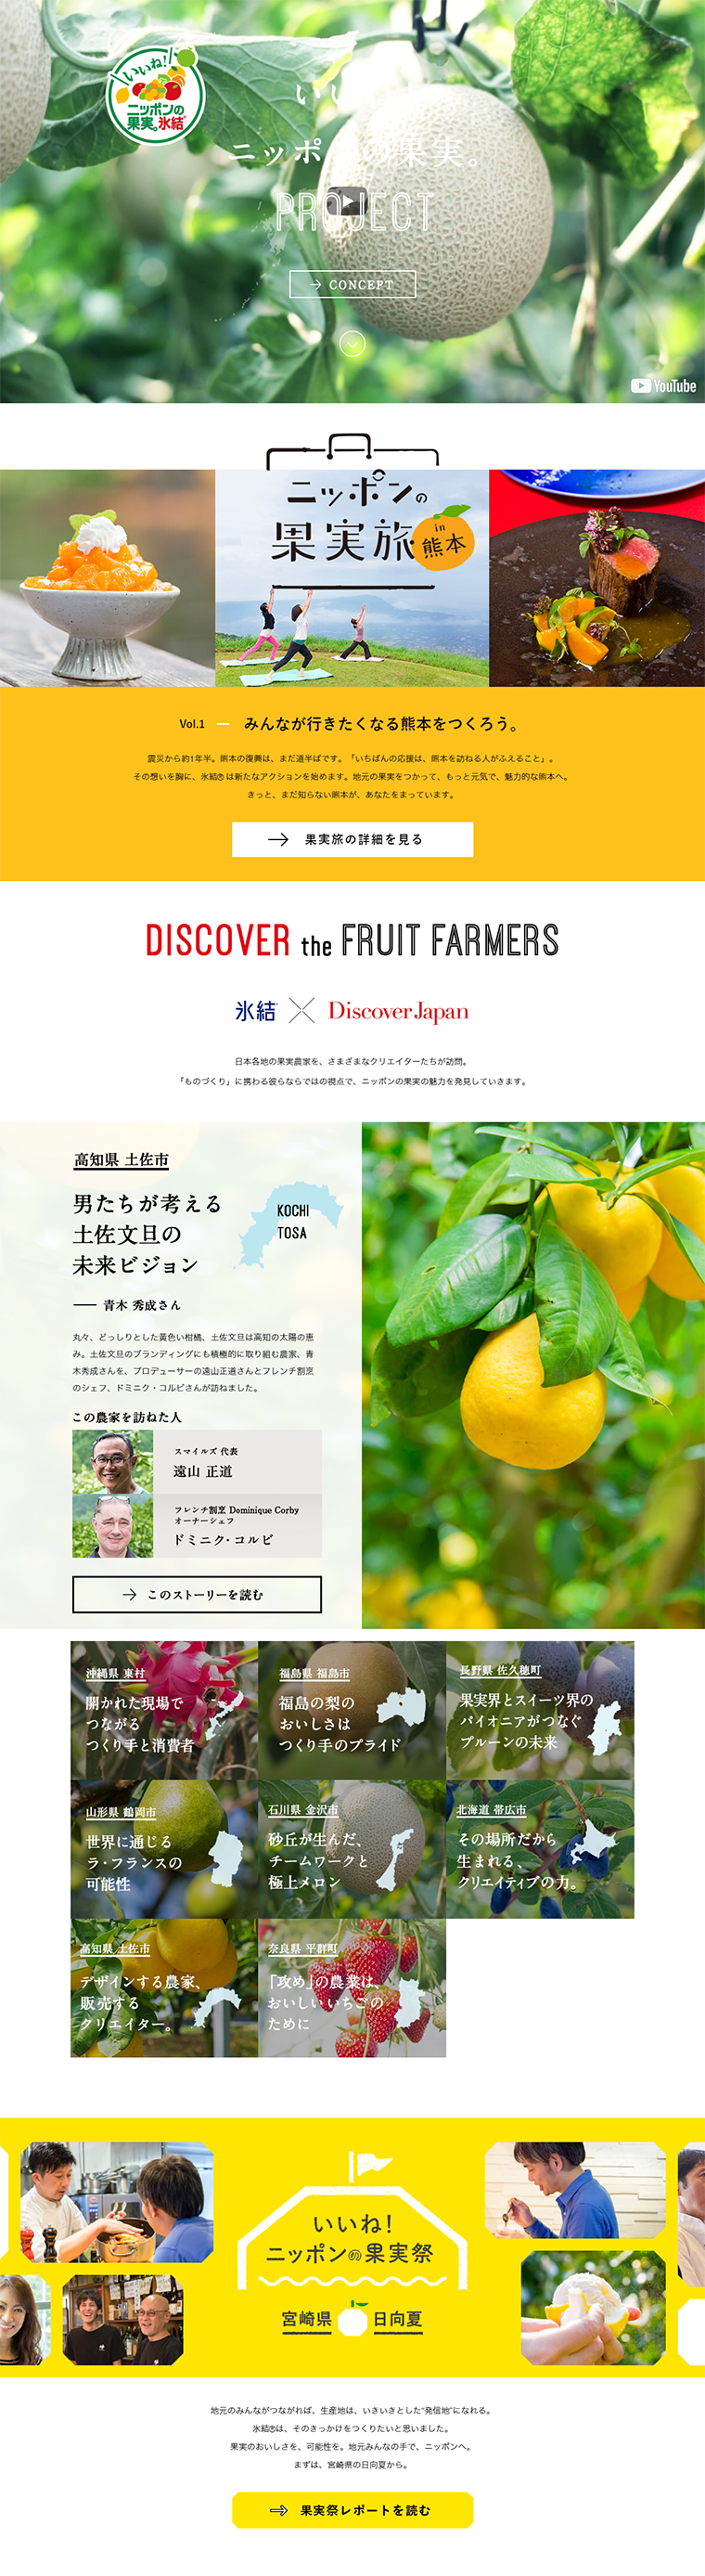 「いいね！ニッポンの果実。」プロジェクト_pc_1